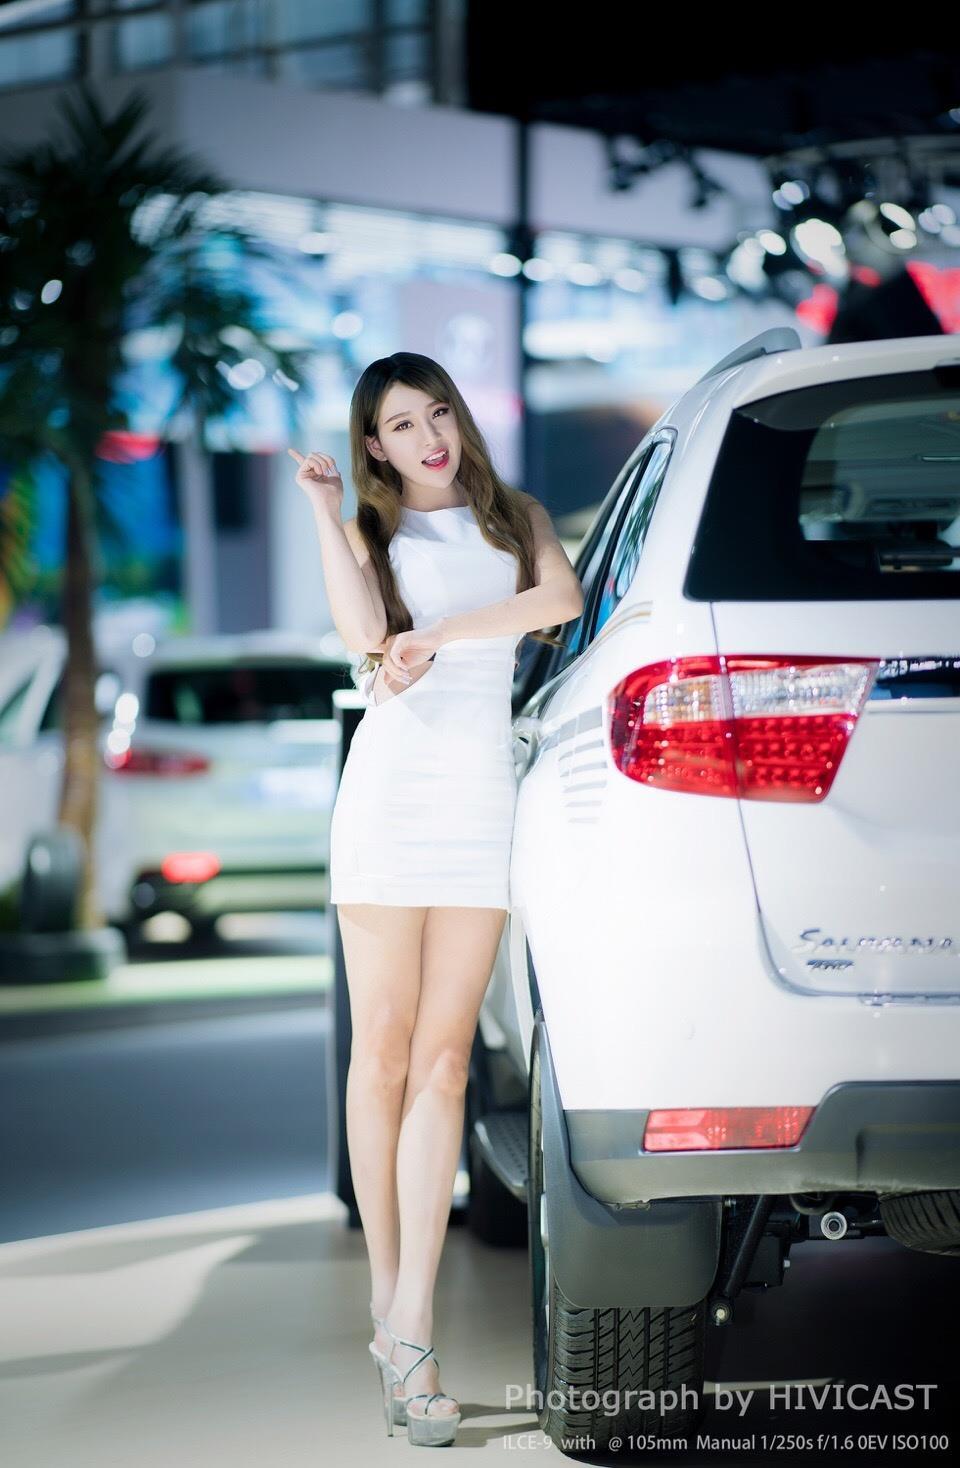 2017广州车展 北京福田汽车展台 身穿白色紧身连身裙的美女车模,